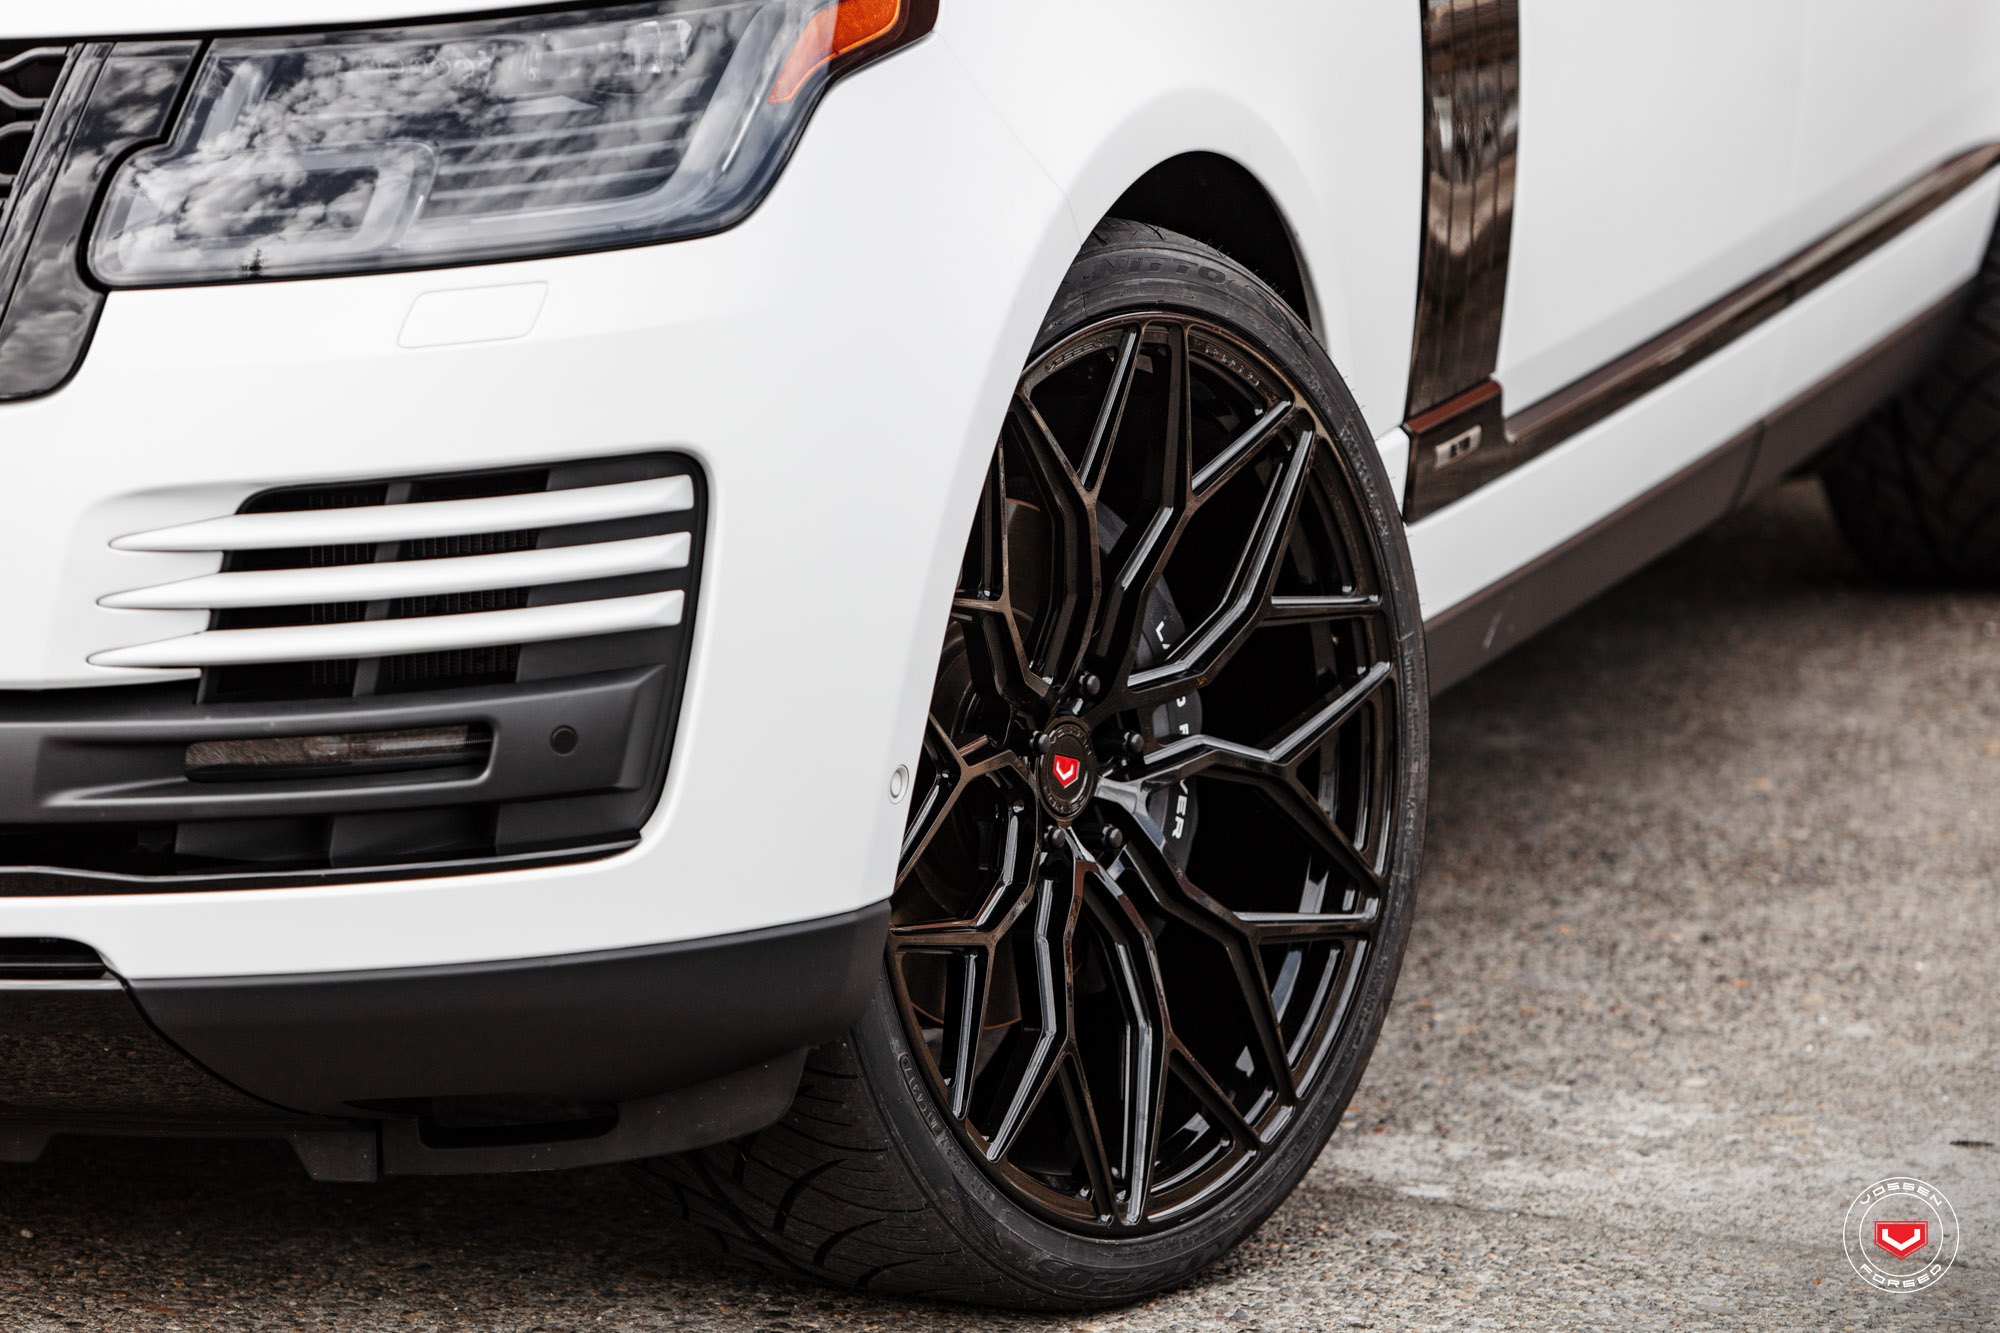 Vossen Forged Wheels on White Range Rover - Photo by Vossen